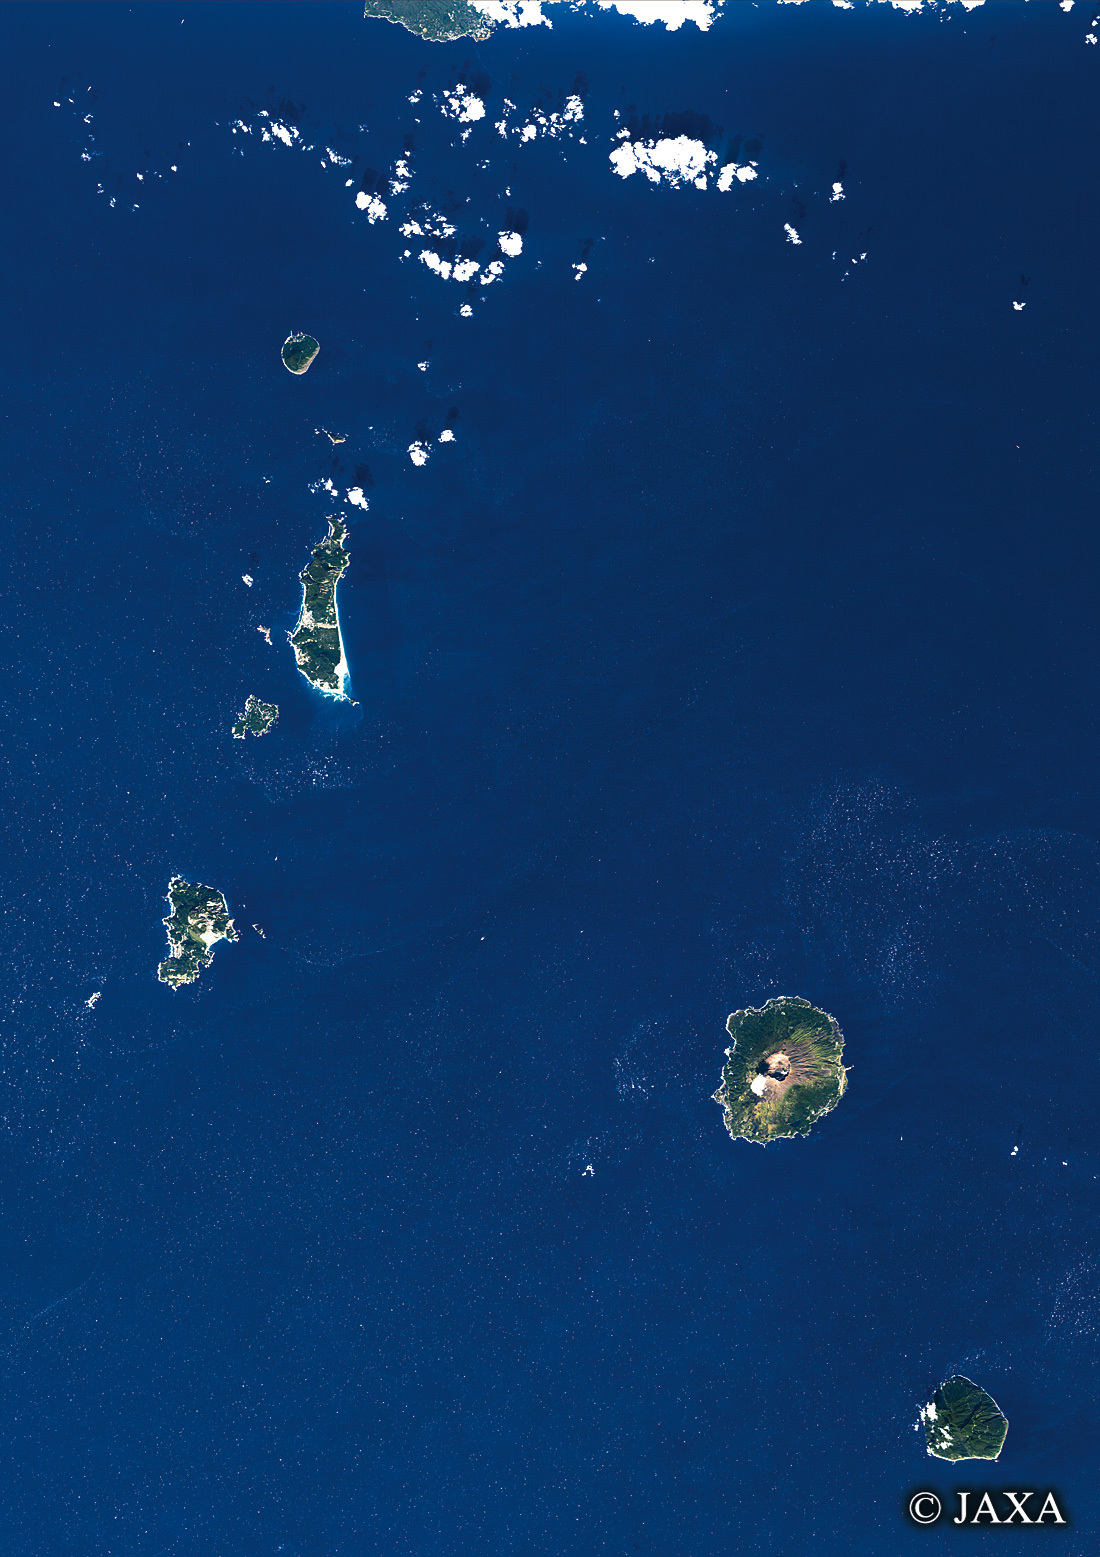 だいちから見た日本の都市 伊豆諸島:衛星画像